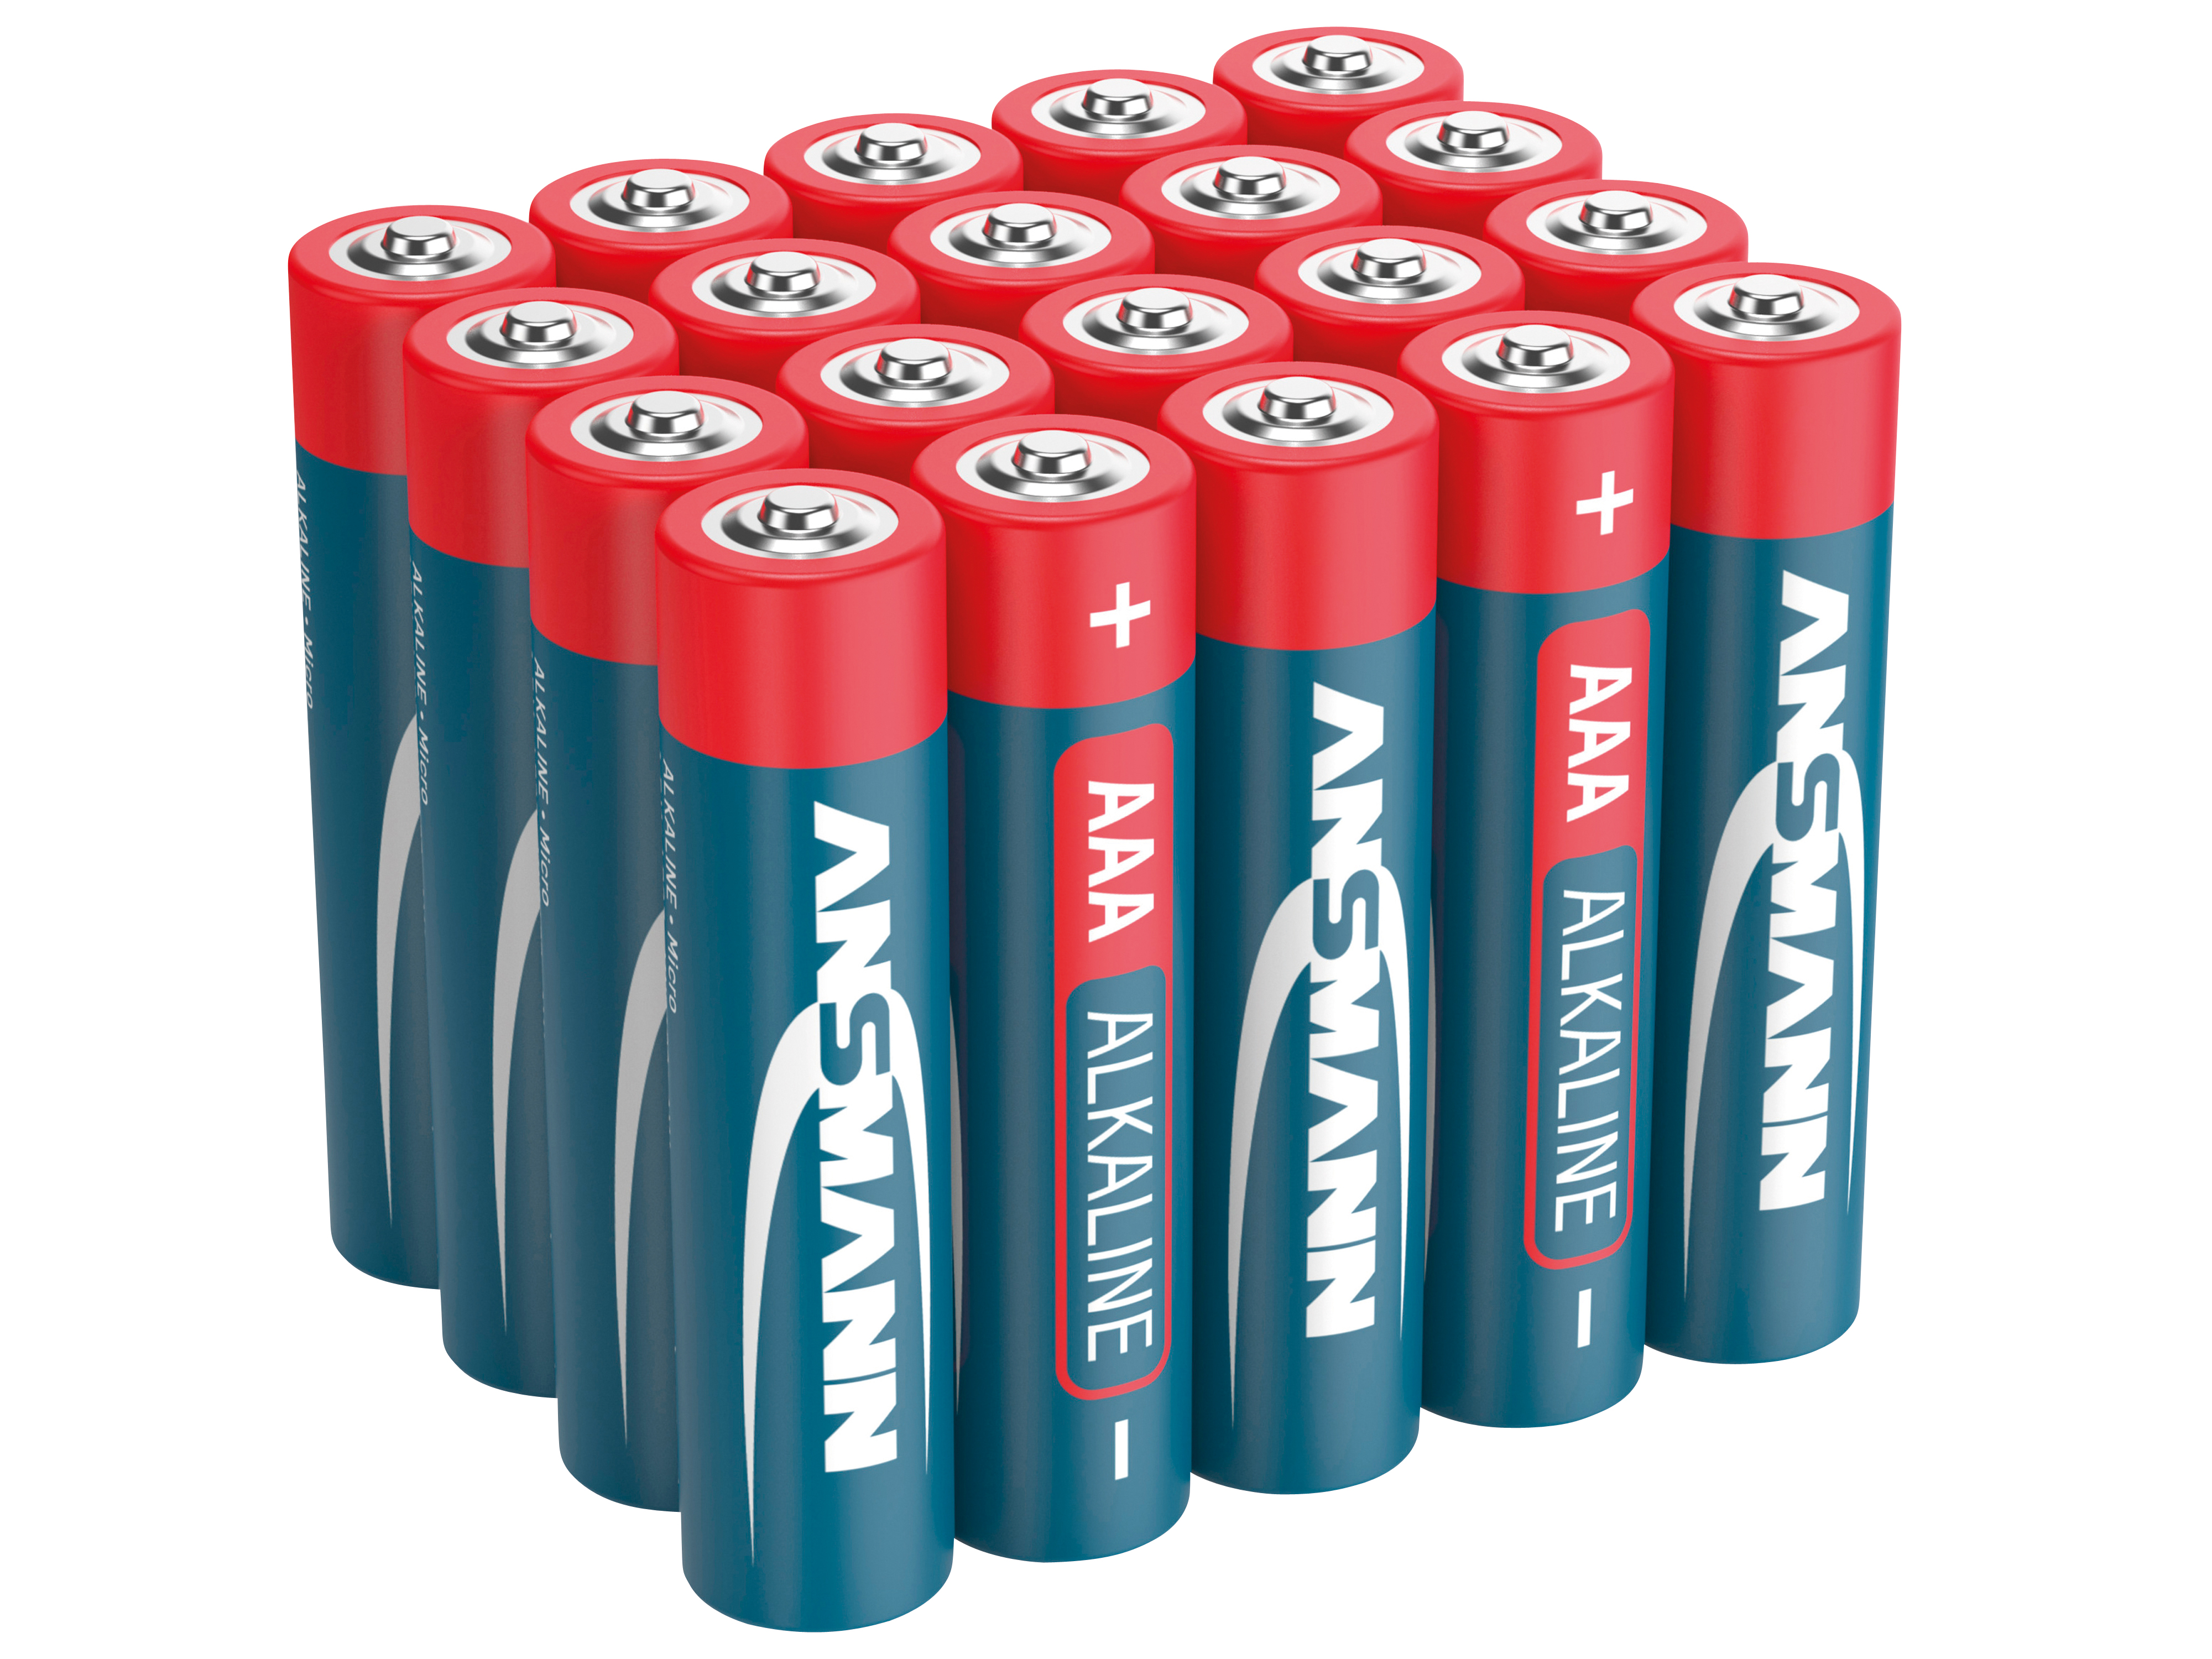 ANSMANN Micro-Batterie-Set, Alkaline, 20 Stück in einer Box, 1,5 V-